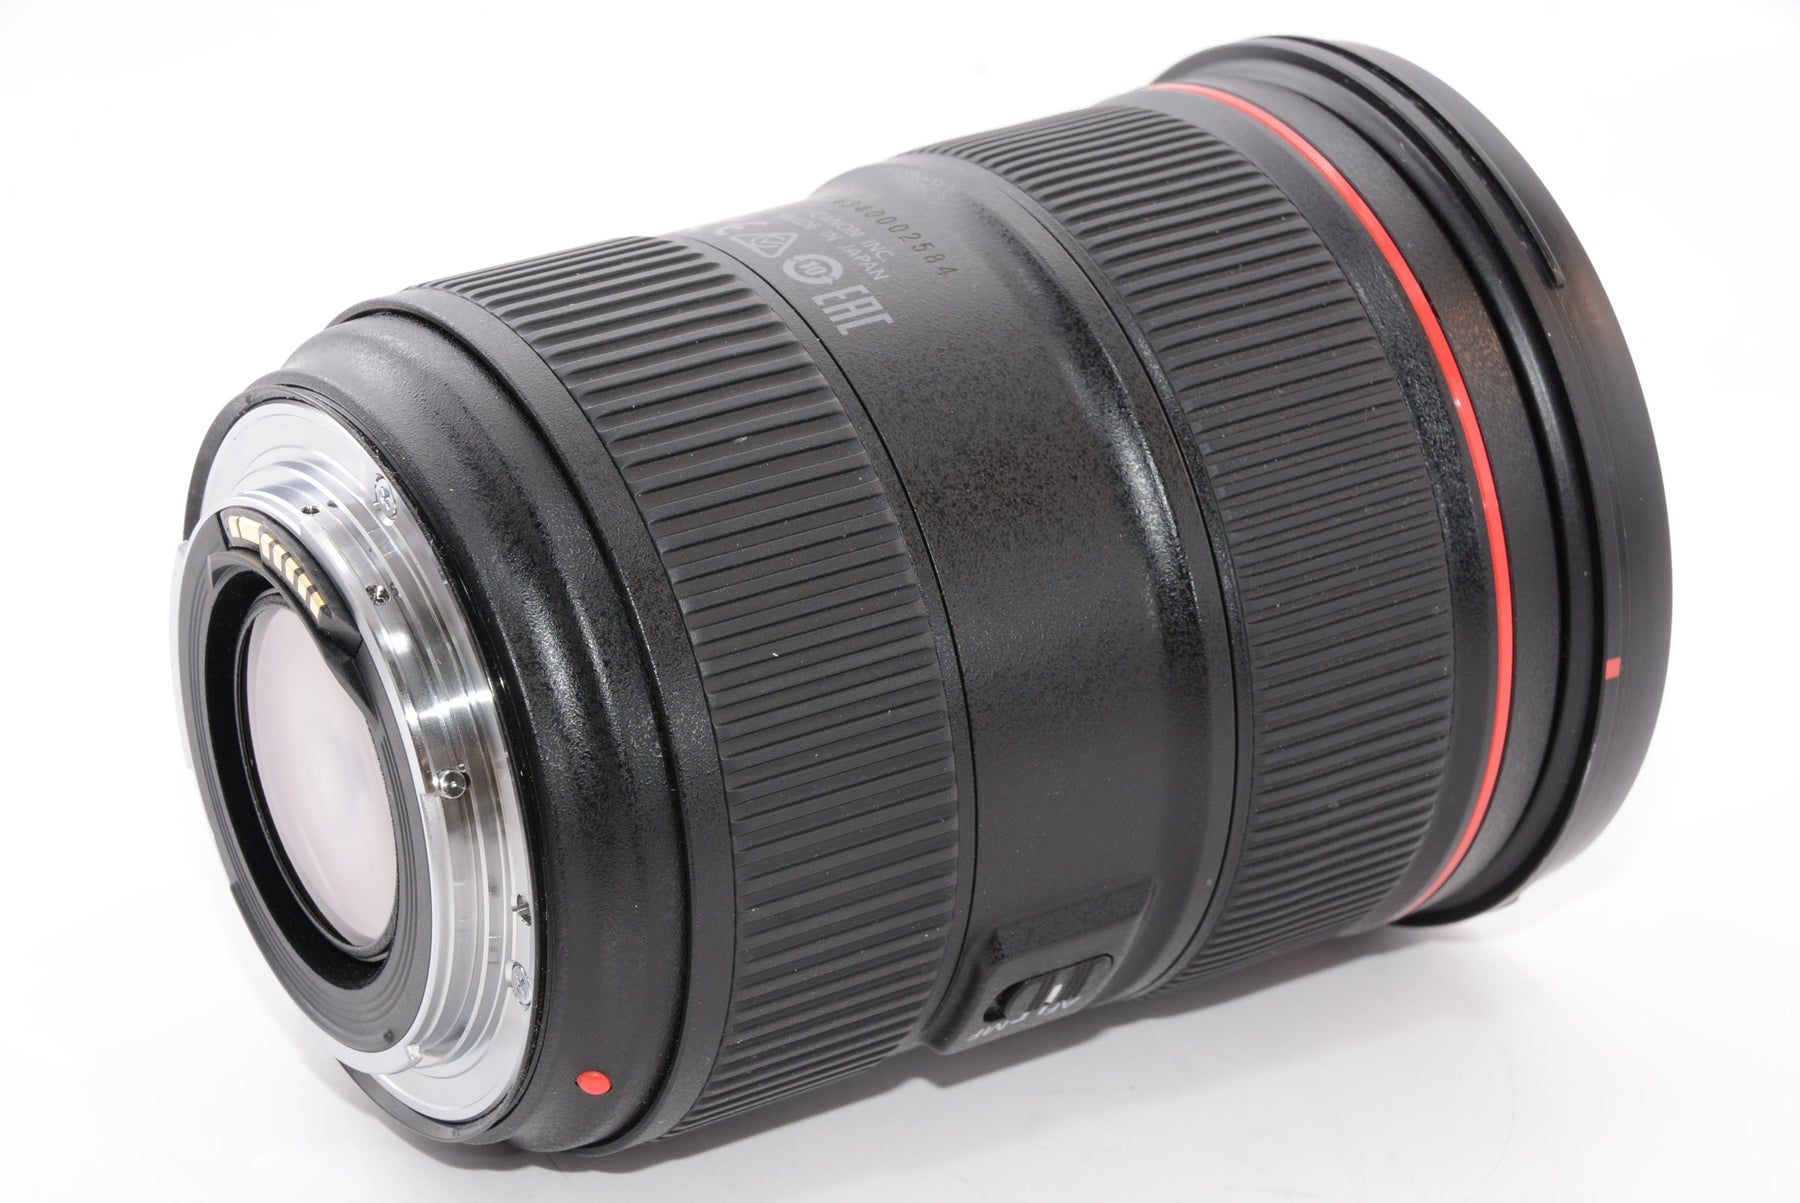 【外観特上級】Canon 標準ズームレンズ EF24-70mm F2.8L II USM フルサイズ対応